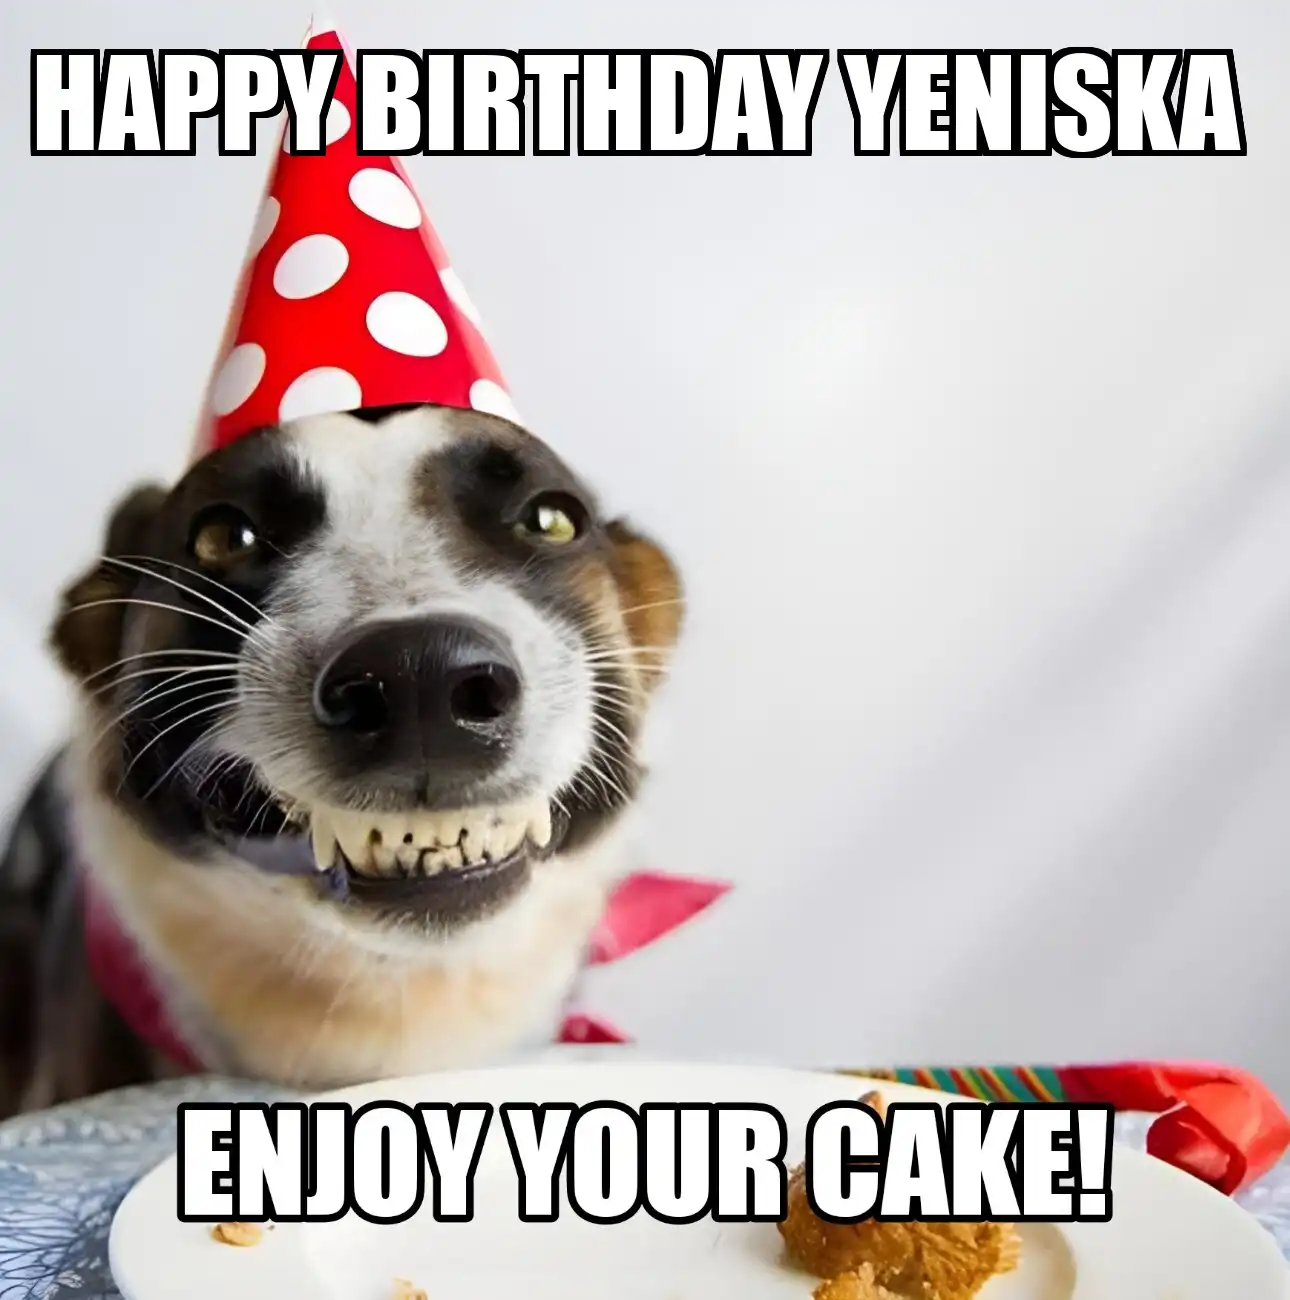 Happy Birthday Yeniska Enjoy Your Cake Dog Meme